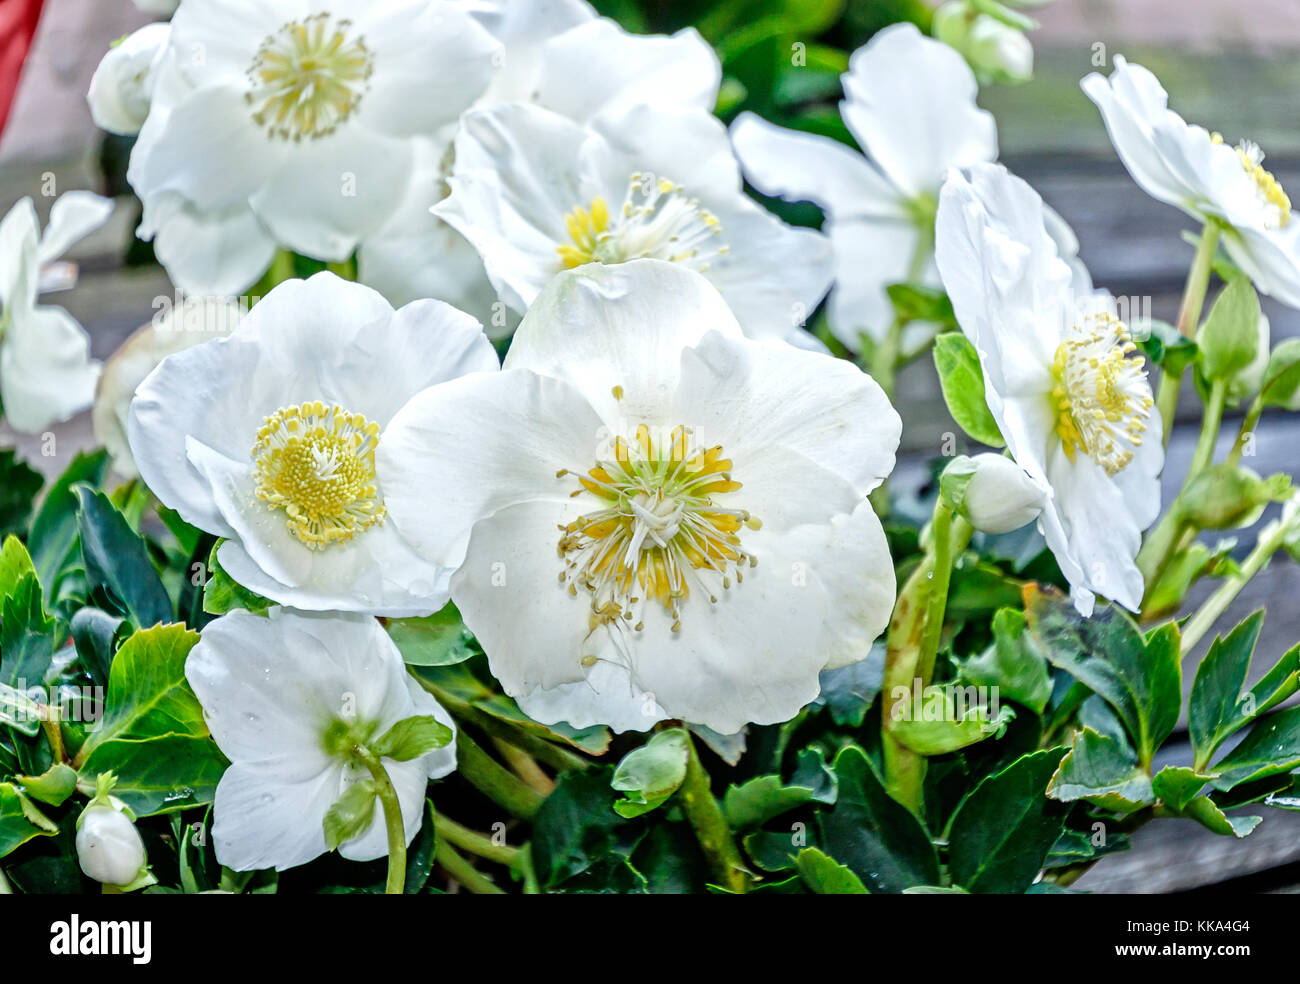 Immergrüne Staude Pflanze - White Christmas rose - christrosen Blumen  Stockfotografie - Alamy